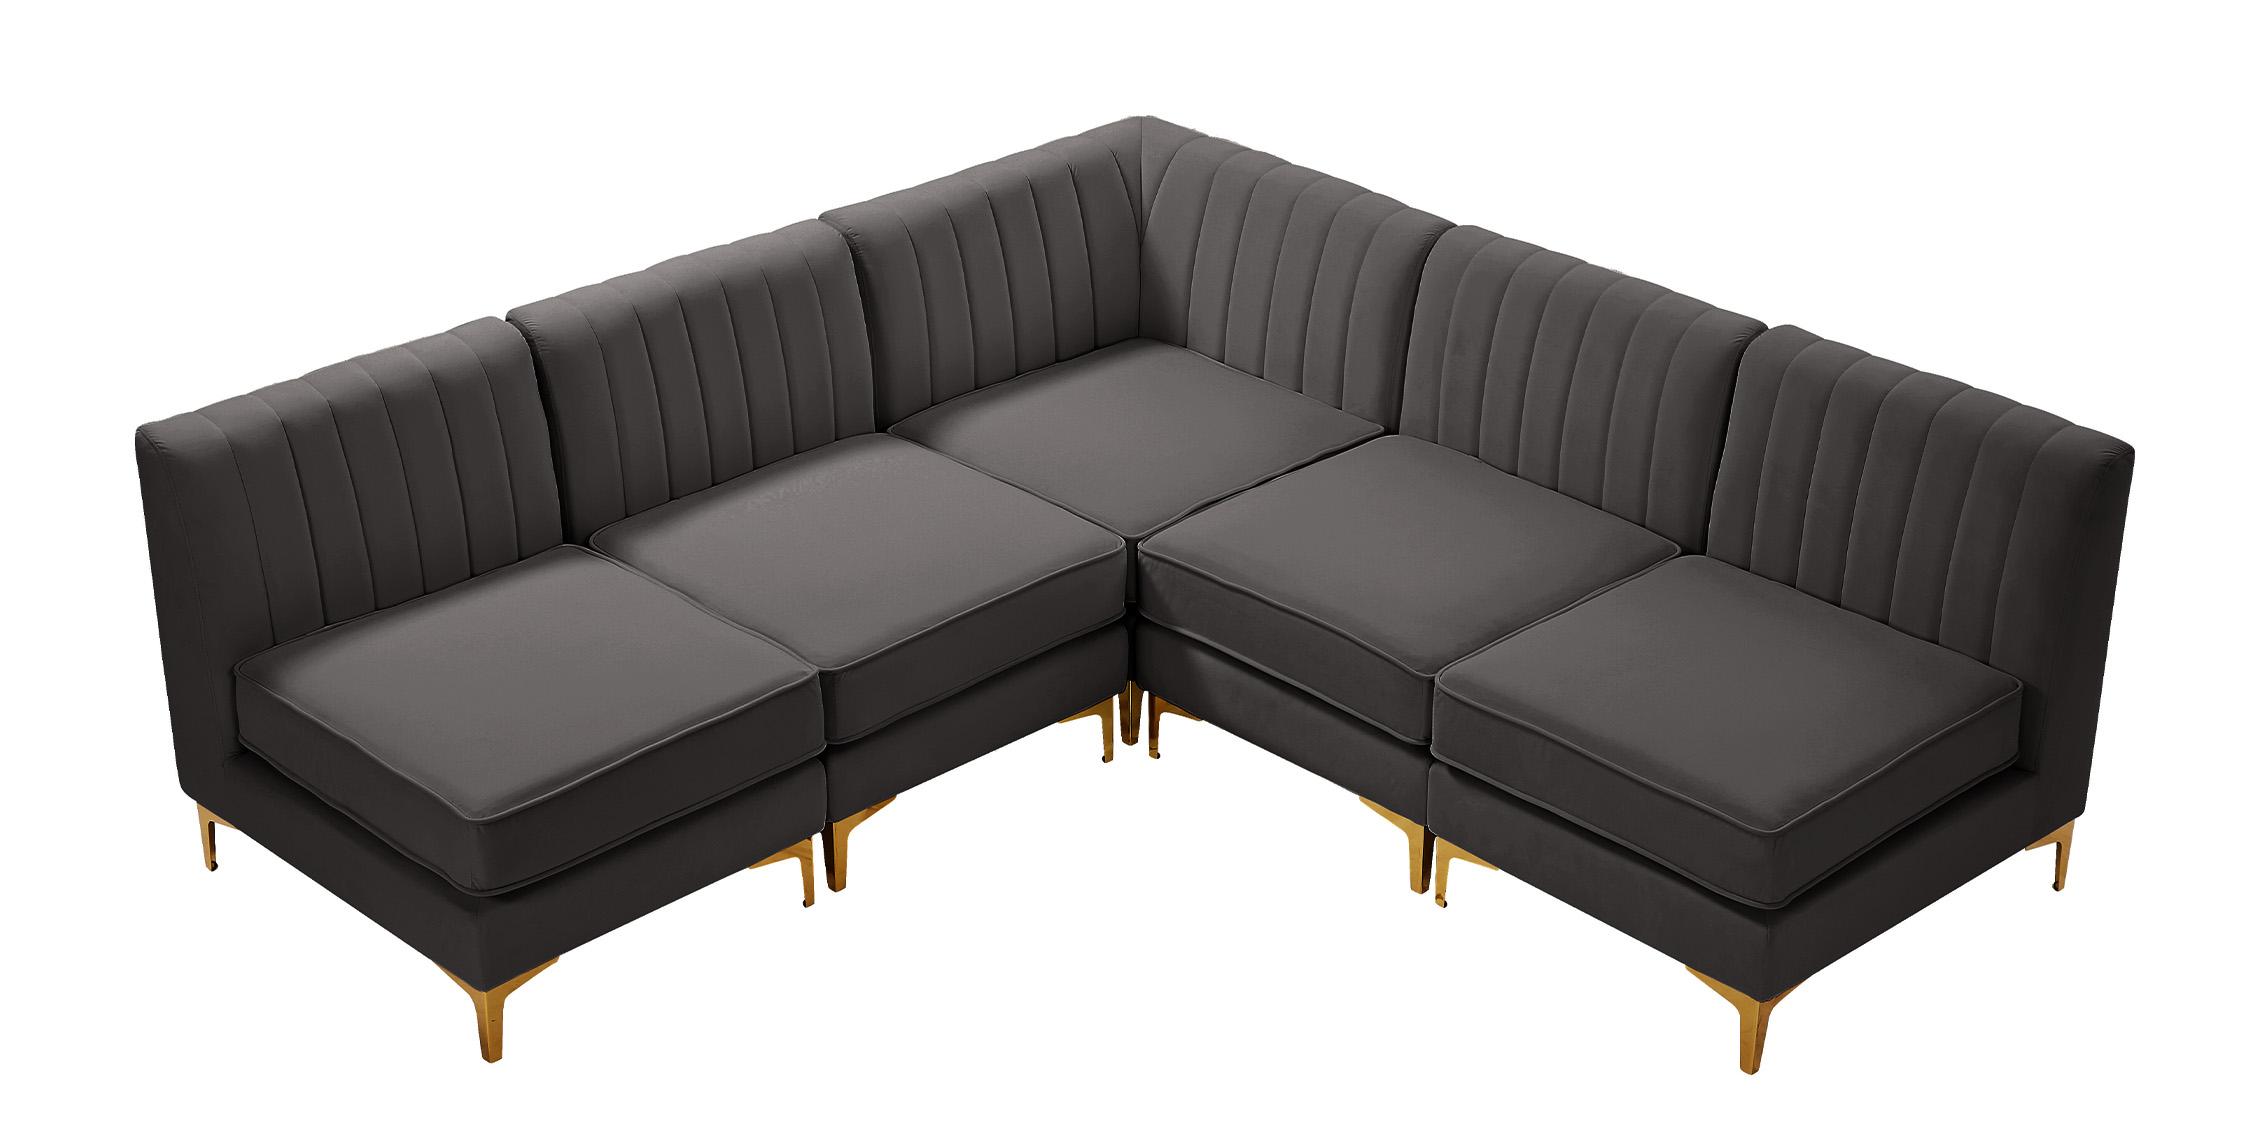 

    
Meridian Furniture ALINA 604Grey-Sec5A Modular Sectional Sofa Gray 604Grey-Sec5A
